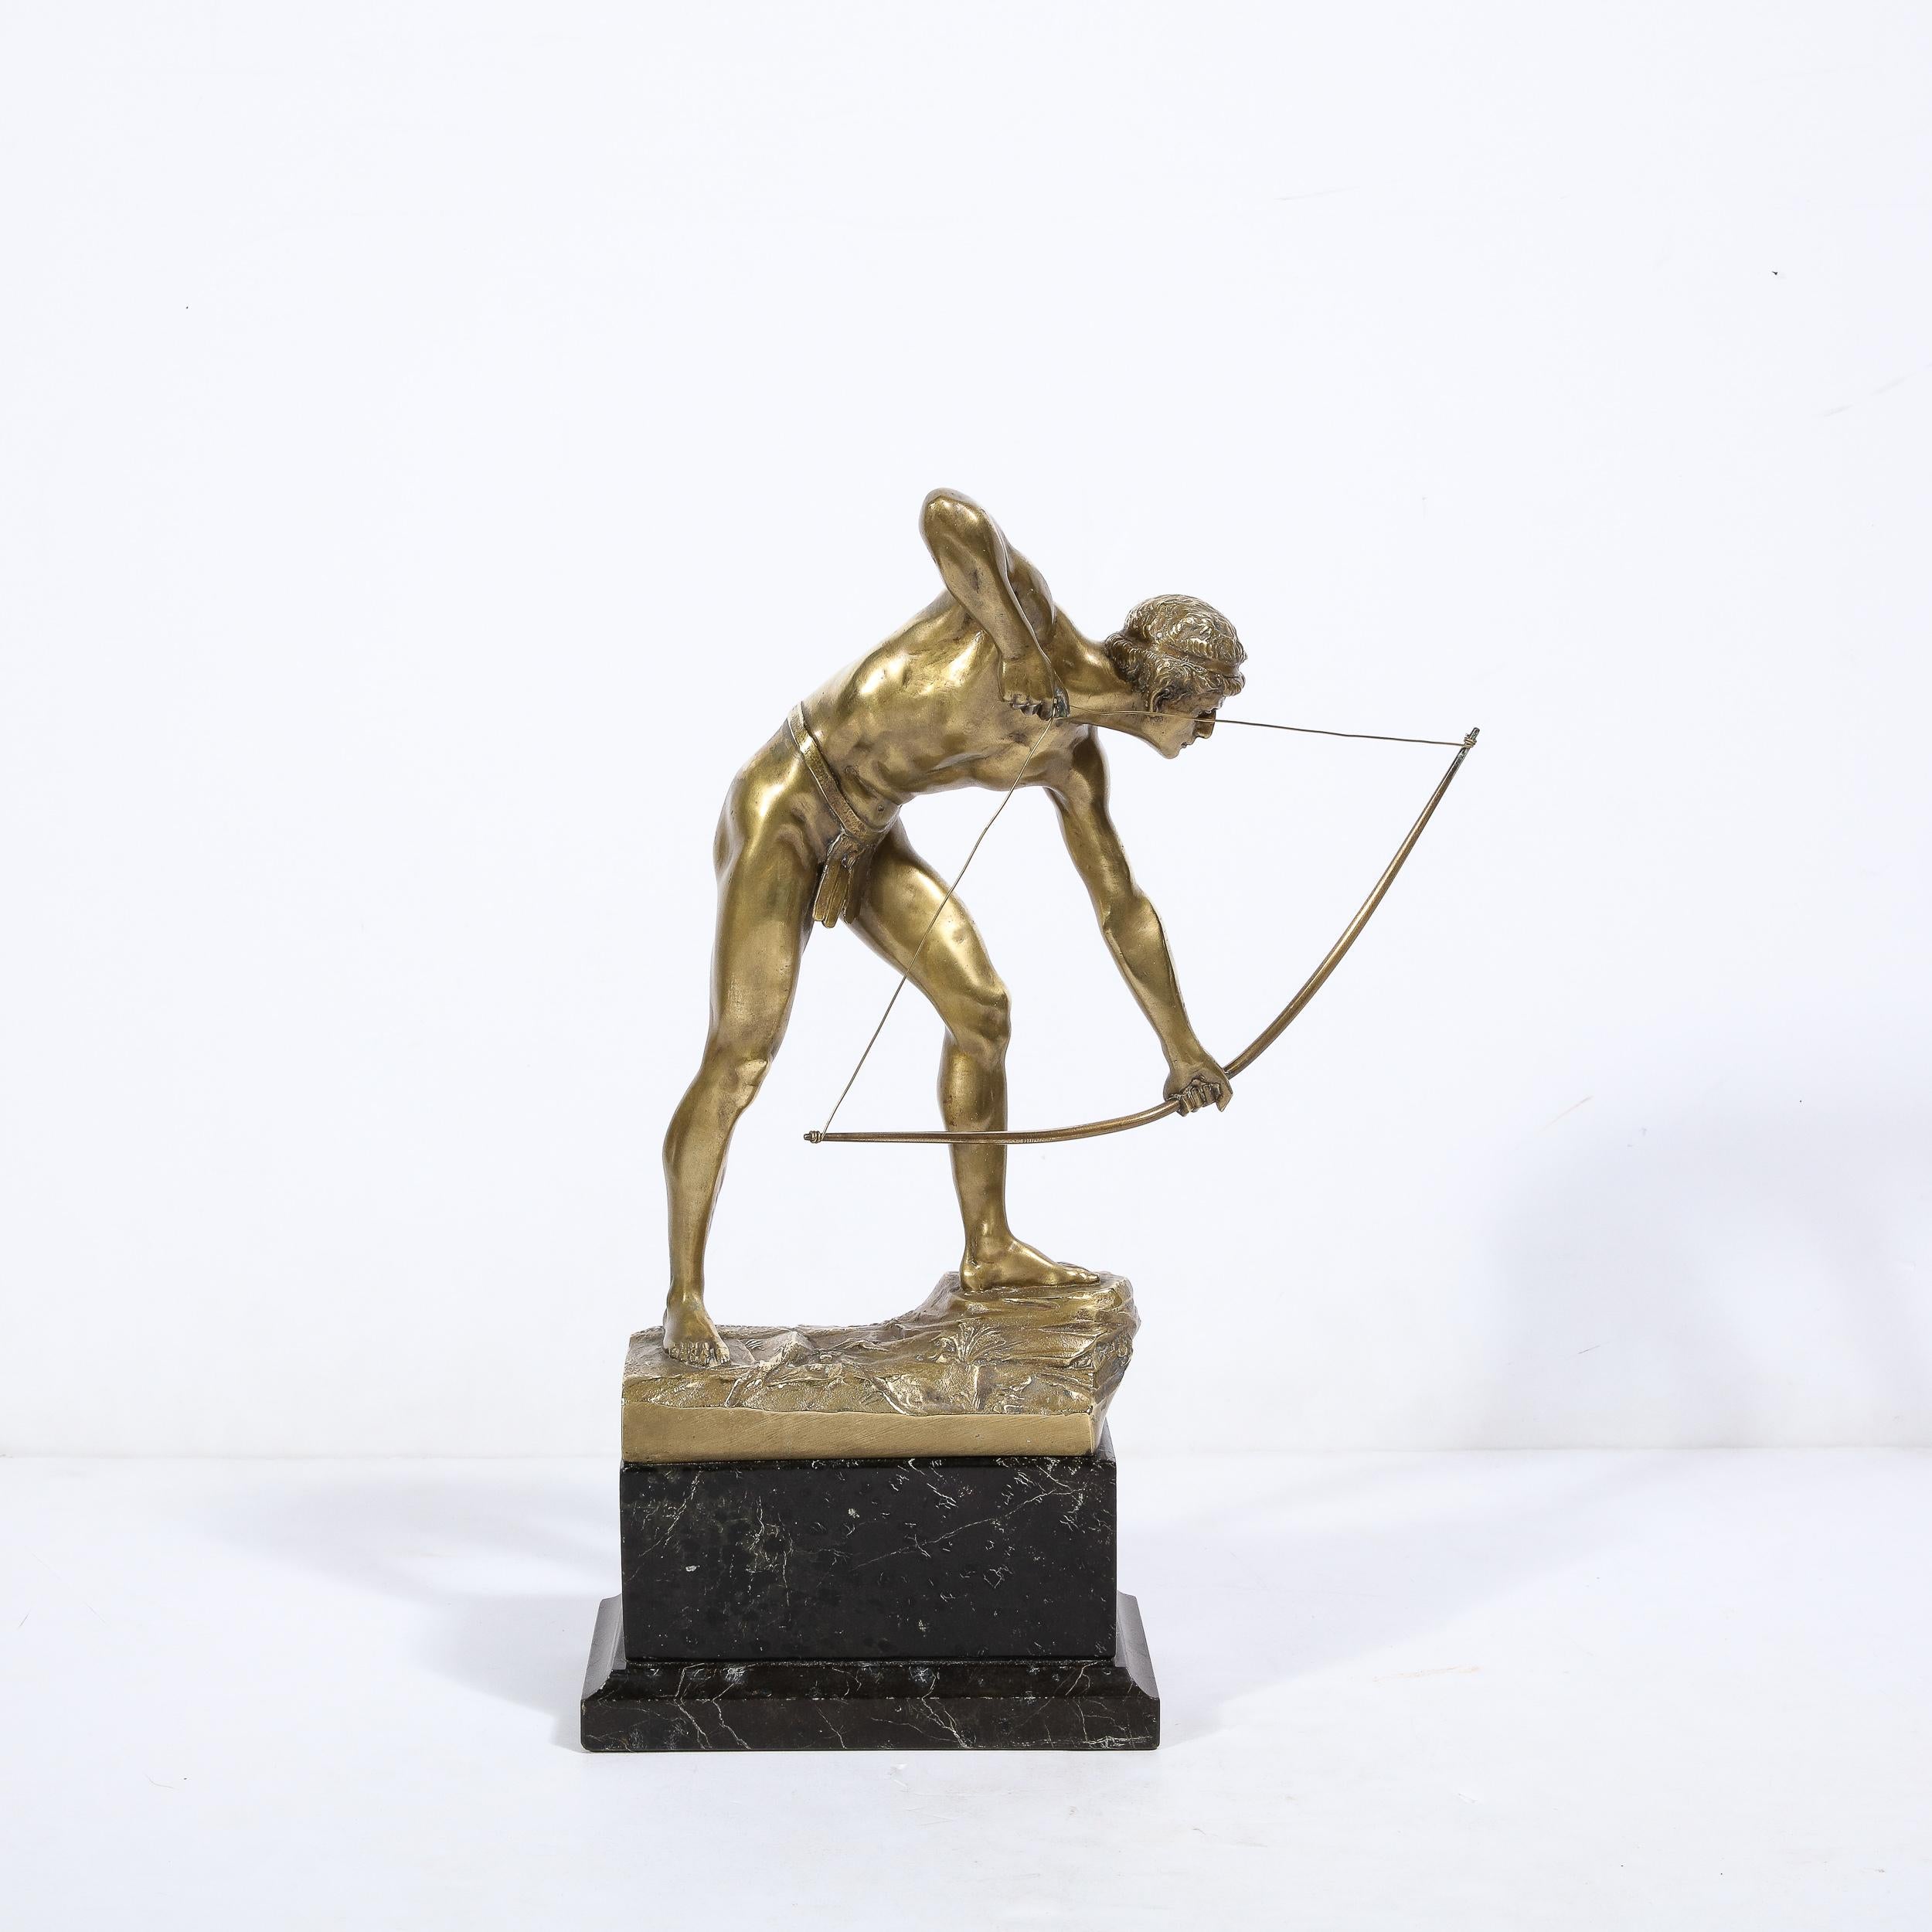 Diese fesselnde Skulptur aus vergoldeter Bronze auf schwarzem Marmorsockel stammt von dem Künstler Otto Schmidt-Hofer aus Deutschland, CIRCA 1920. Diese unglaublich schöne Skulptur zeigt eine bemerkenswerte Körperlichkeit und Beobachtung der